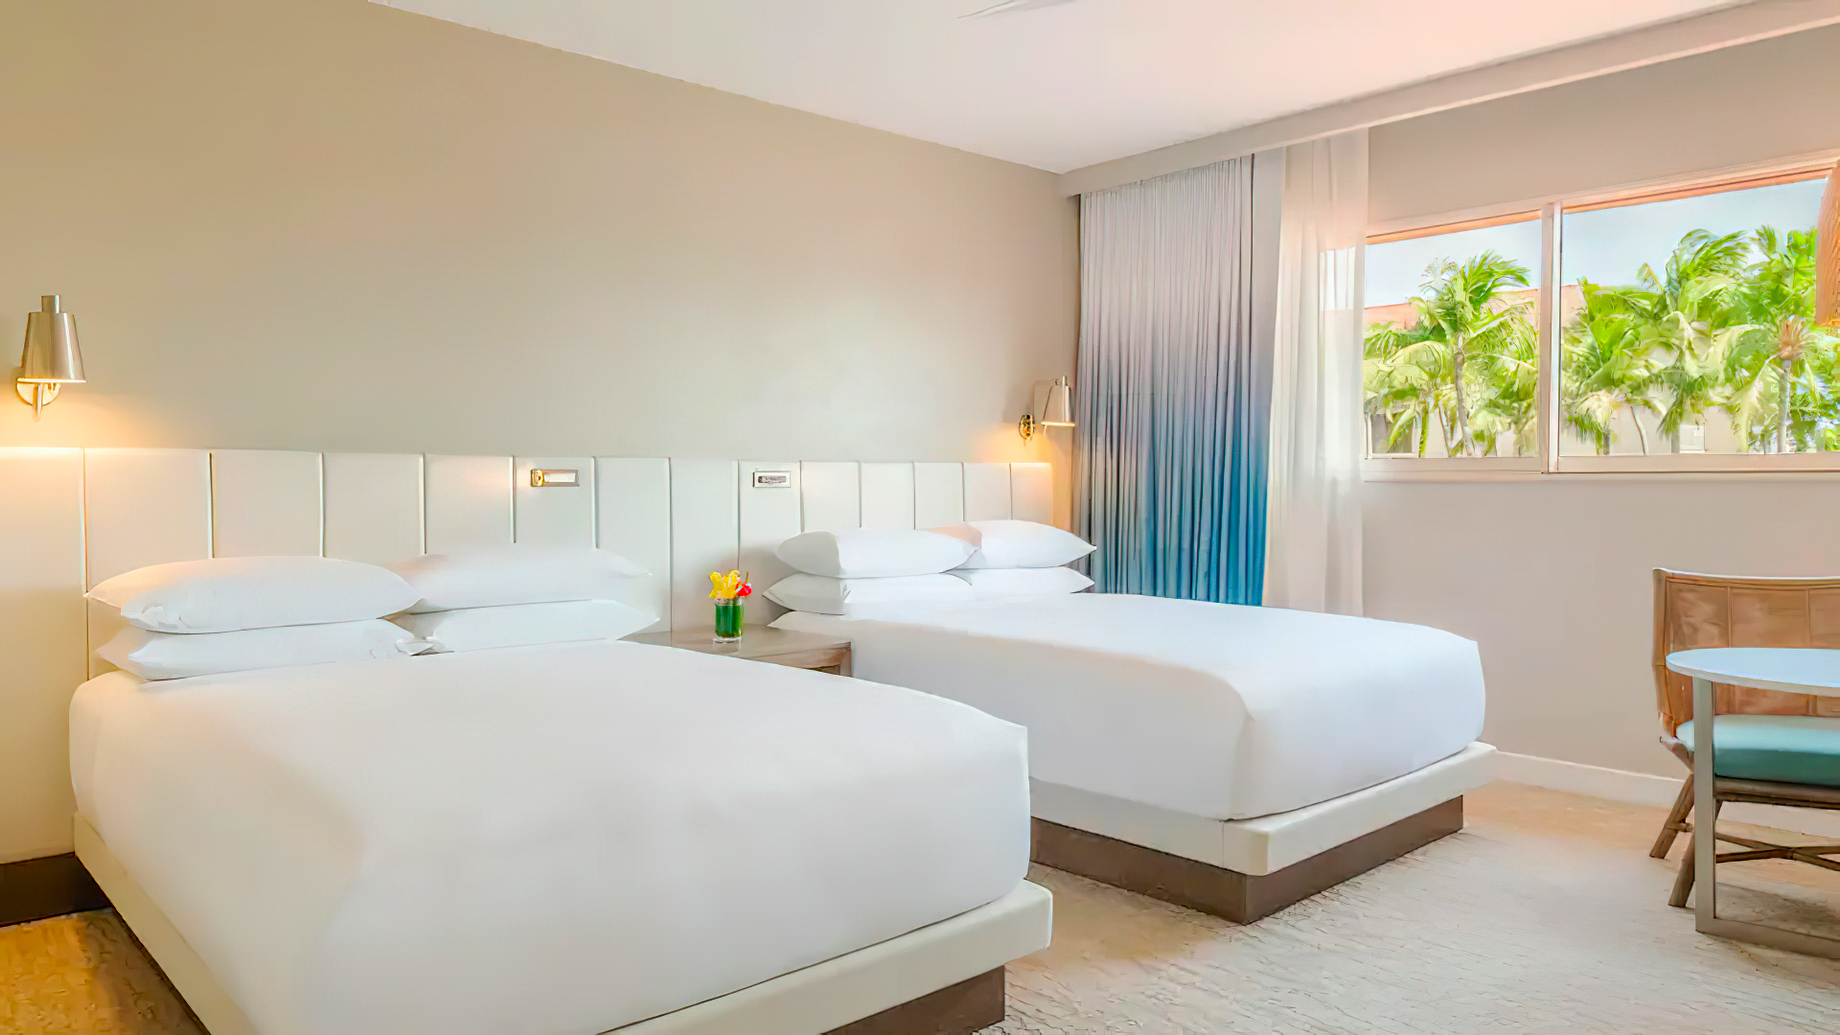 Hyatt Regency Aruba Resort & Casino – Noord, Aruba – 2 Queen Beds